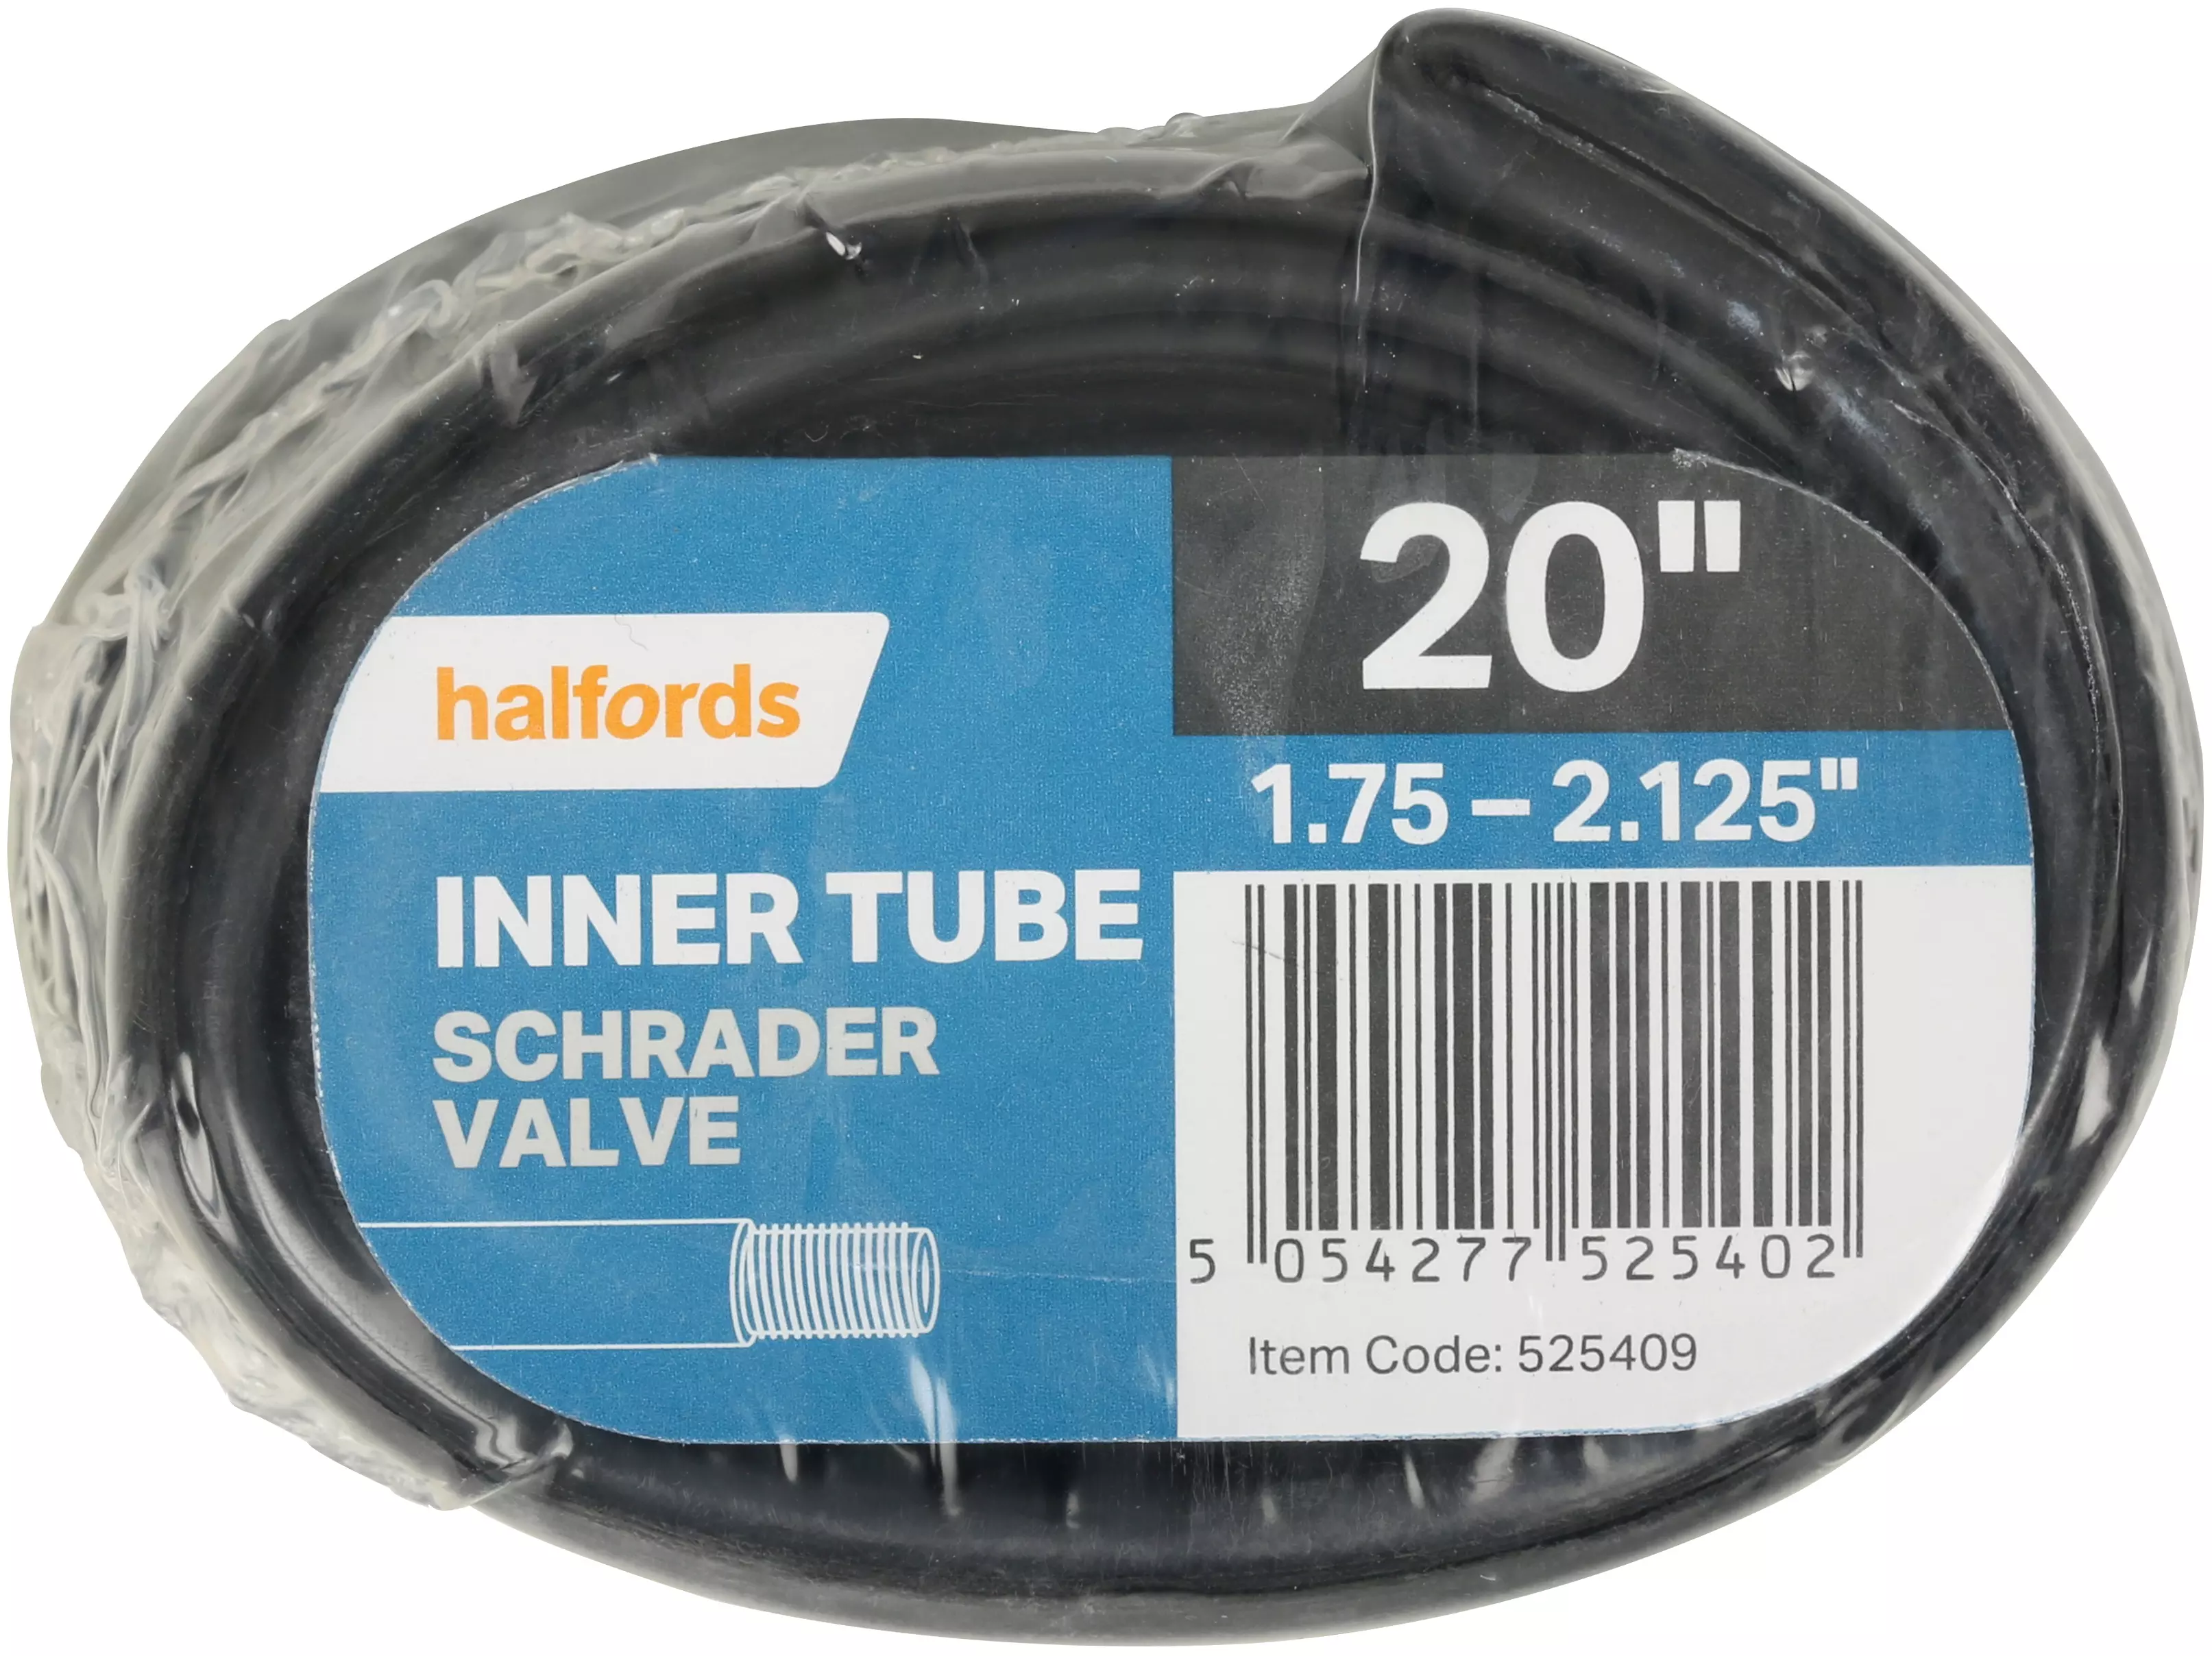 halfords 700c inner tube